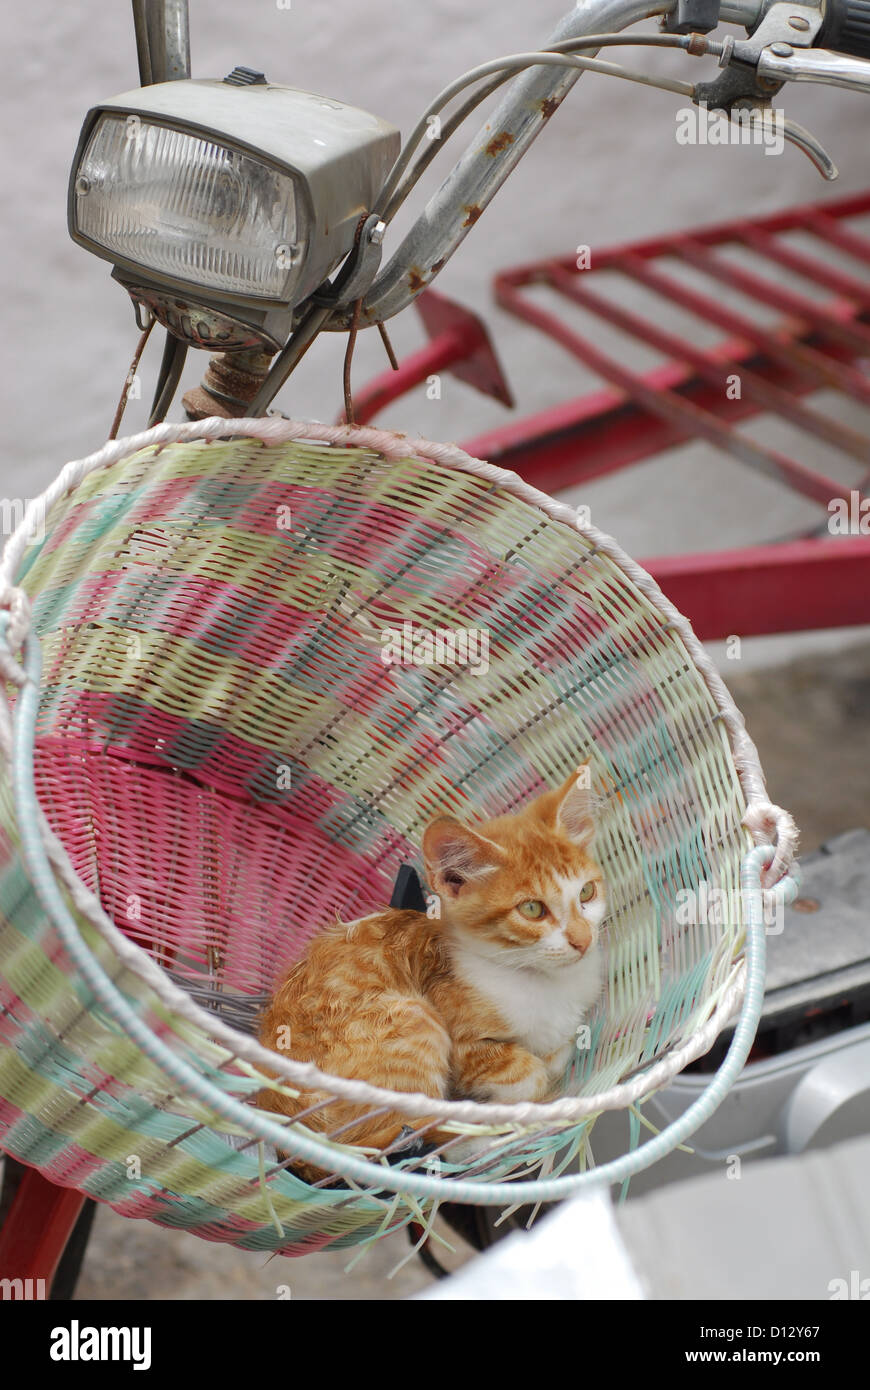 Junges Hauskätzchen, Rot Tabby und Weiss, liegt in einem Fahrradkorb, Dodekanes, Griechenland, gattino, Rosso tabby e bianco, resto Foto Stock